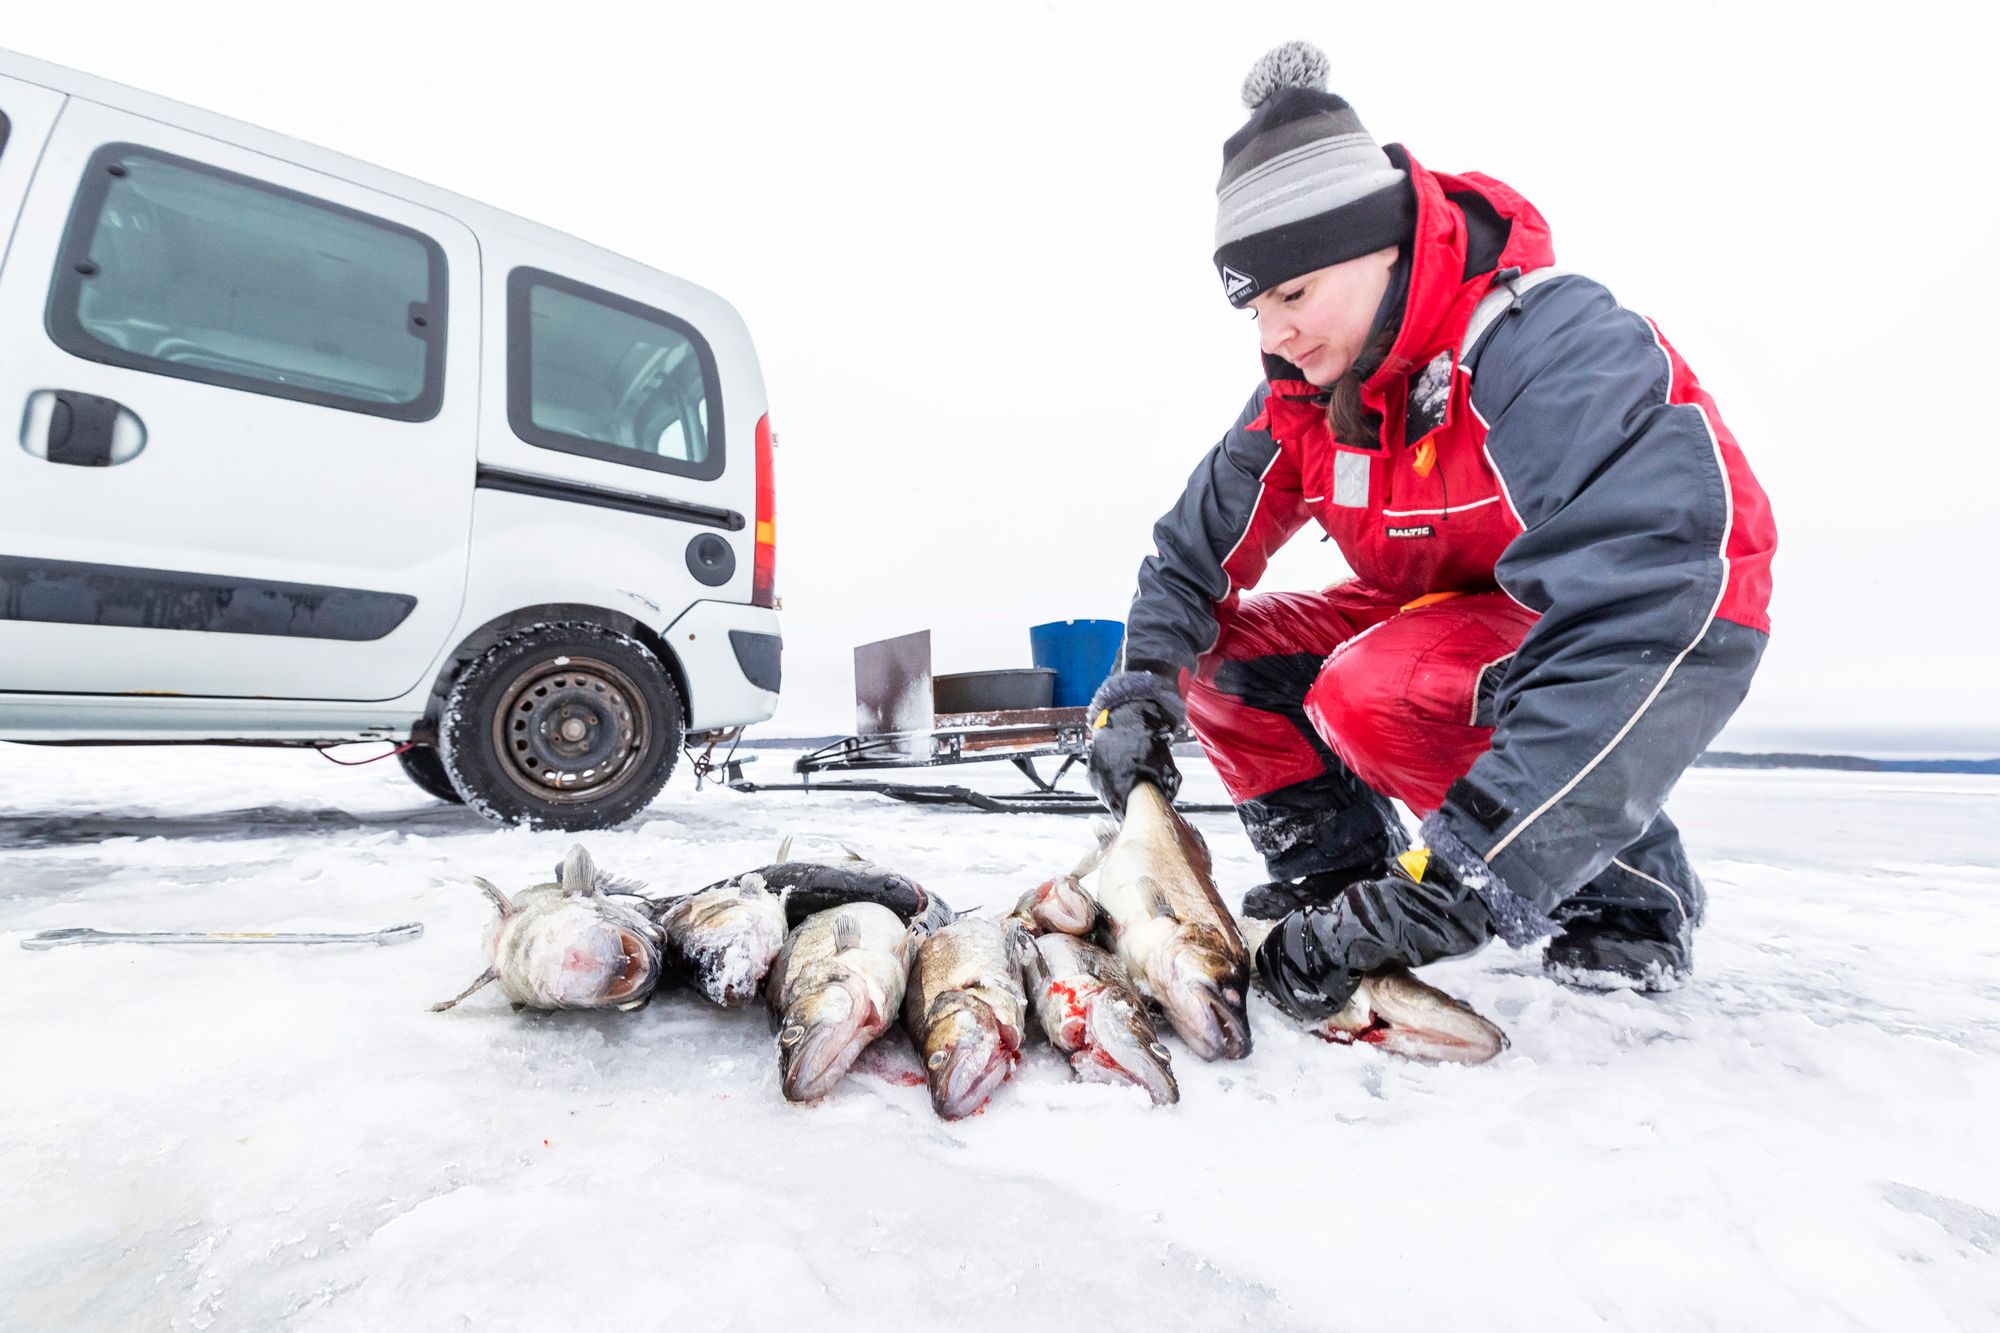 Verkon silmäkoko ratkaisee, minkä kokoiset kalat tarttuvat verkkoon. Tässä näkyy osa kuhasaaliista. © Rami Marjamäki